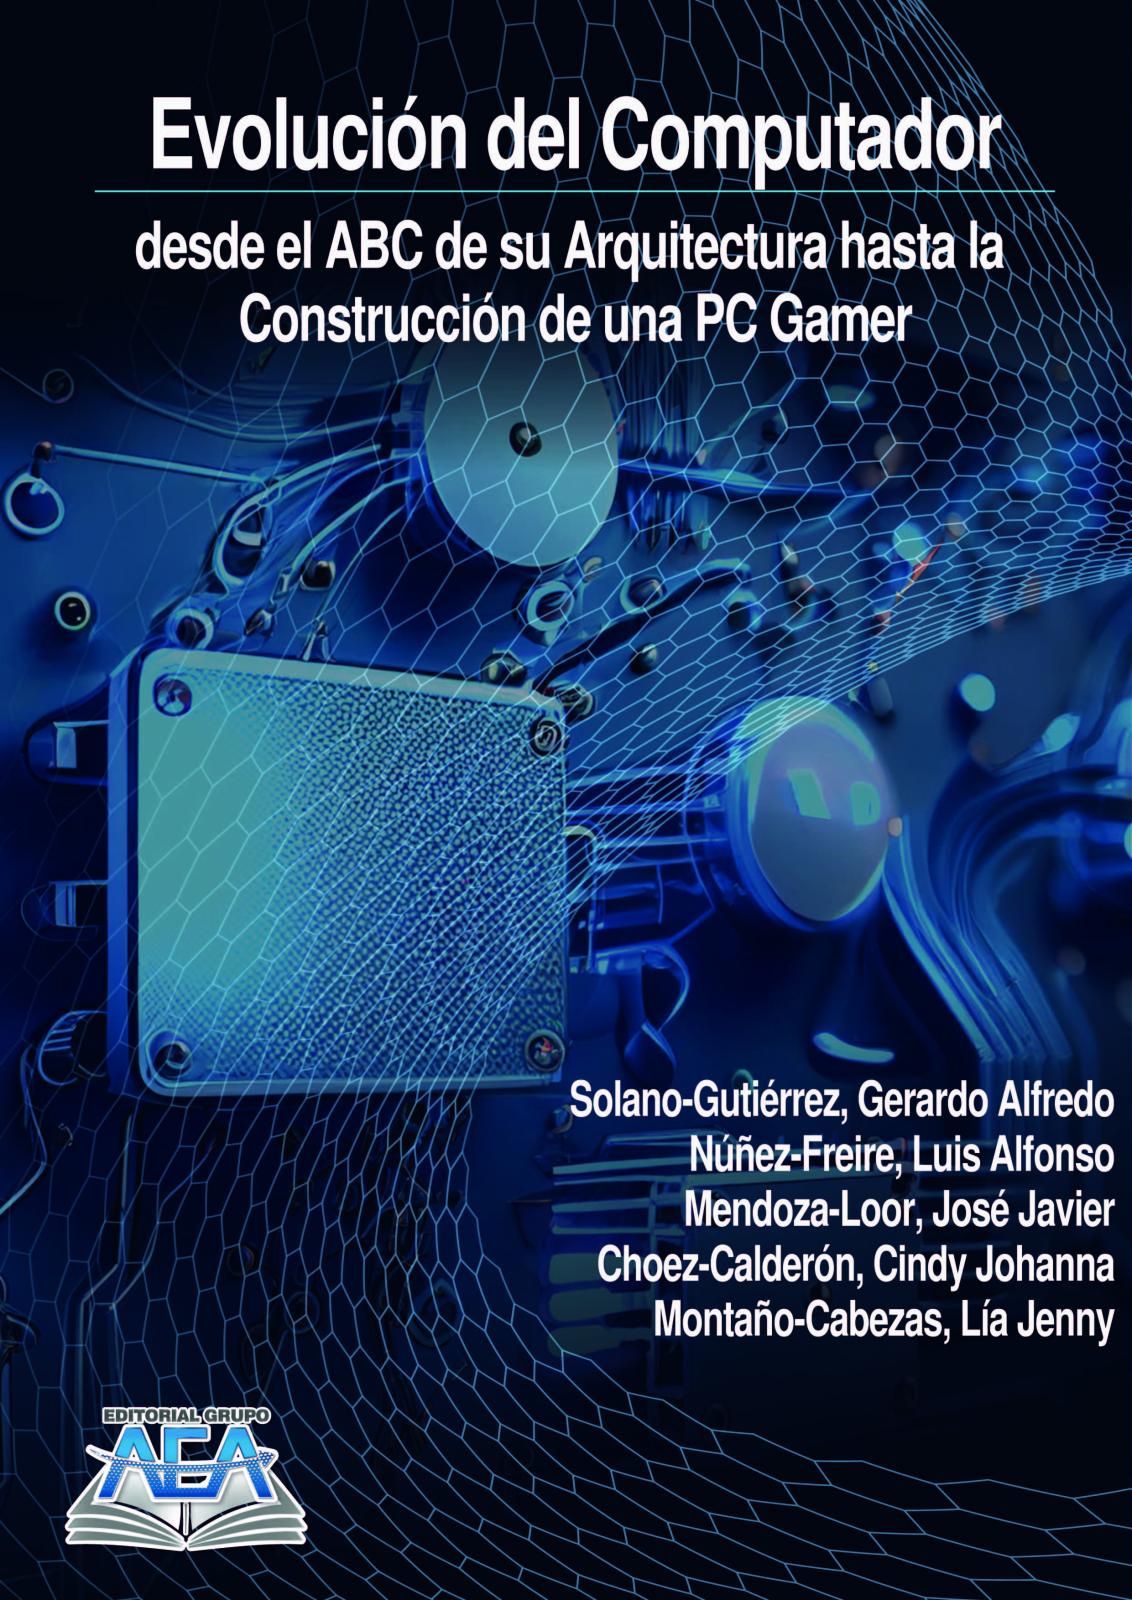 Read more about Evolución del Computador desde el ABC de su Arquitectura hasta la Construcción de una PC Gamer